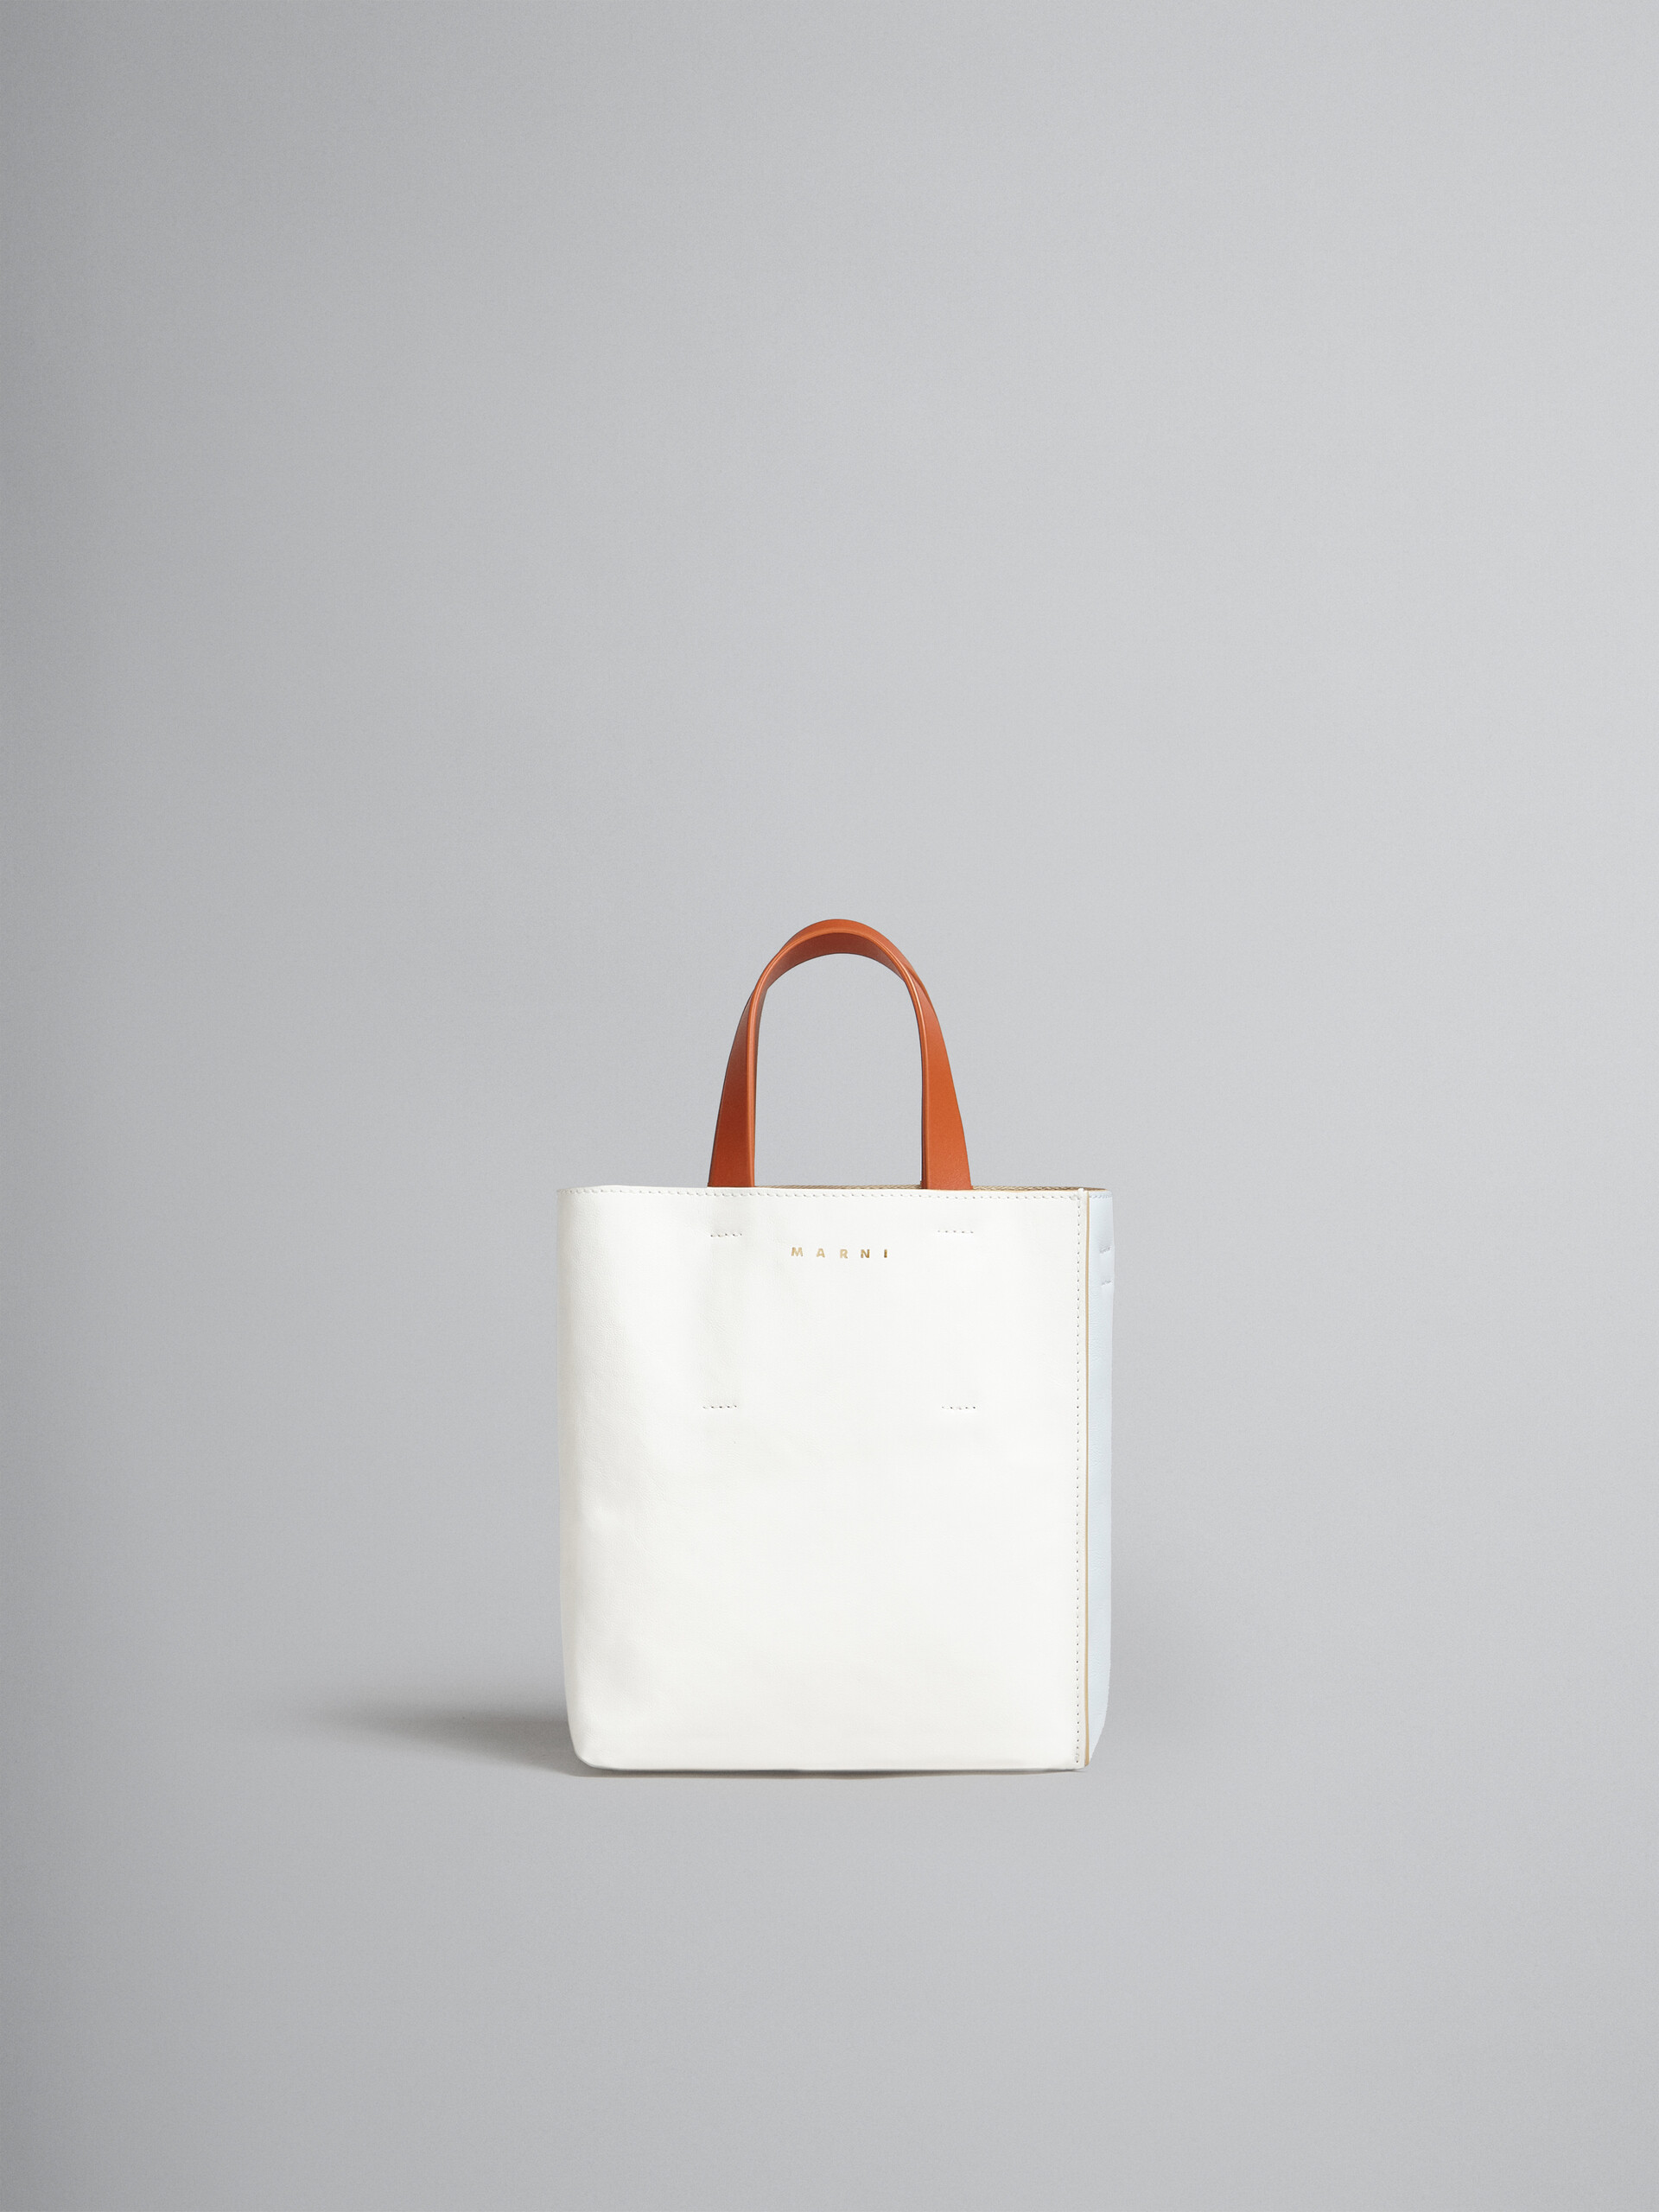 Mini-sac Museo Soft en cuir gris, noir et rouge - Sacs cabas - Image 1